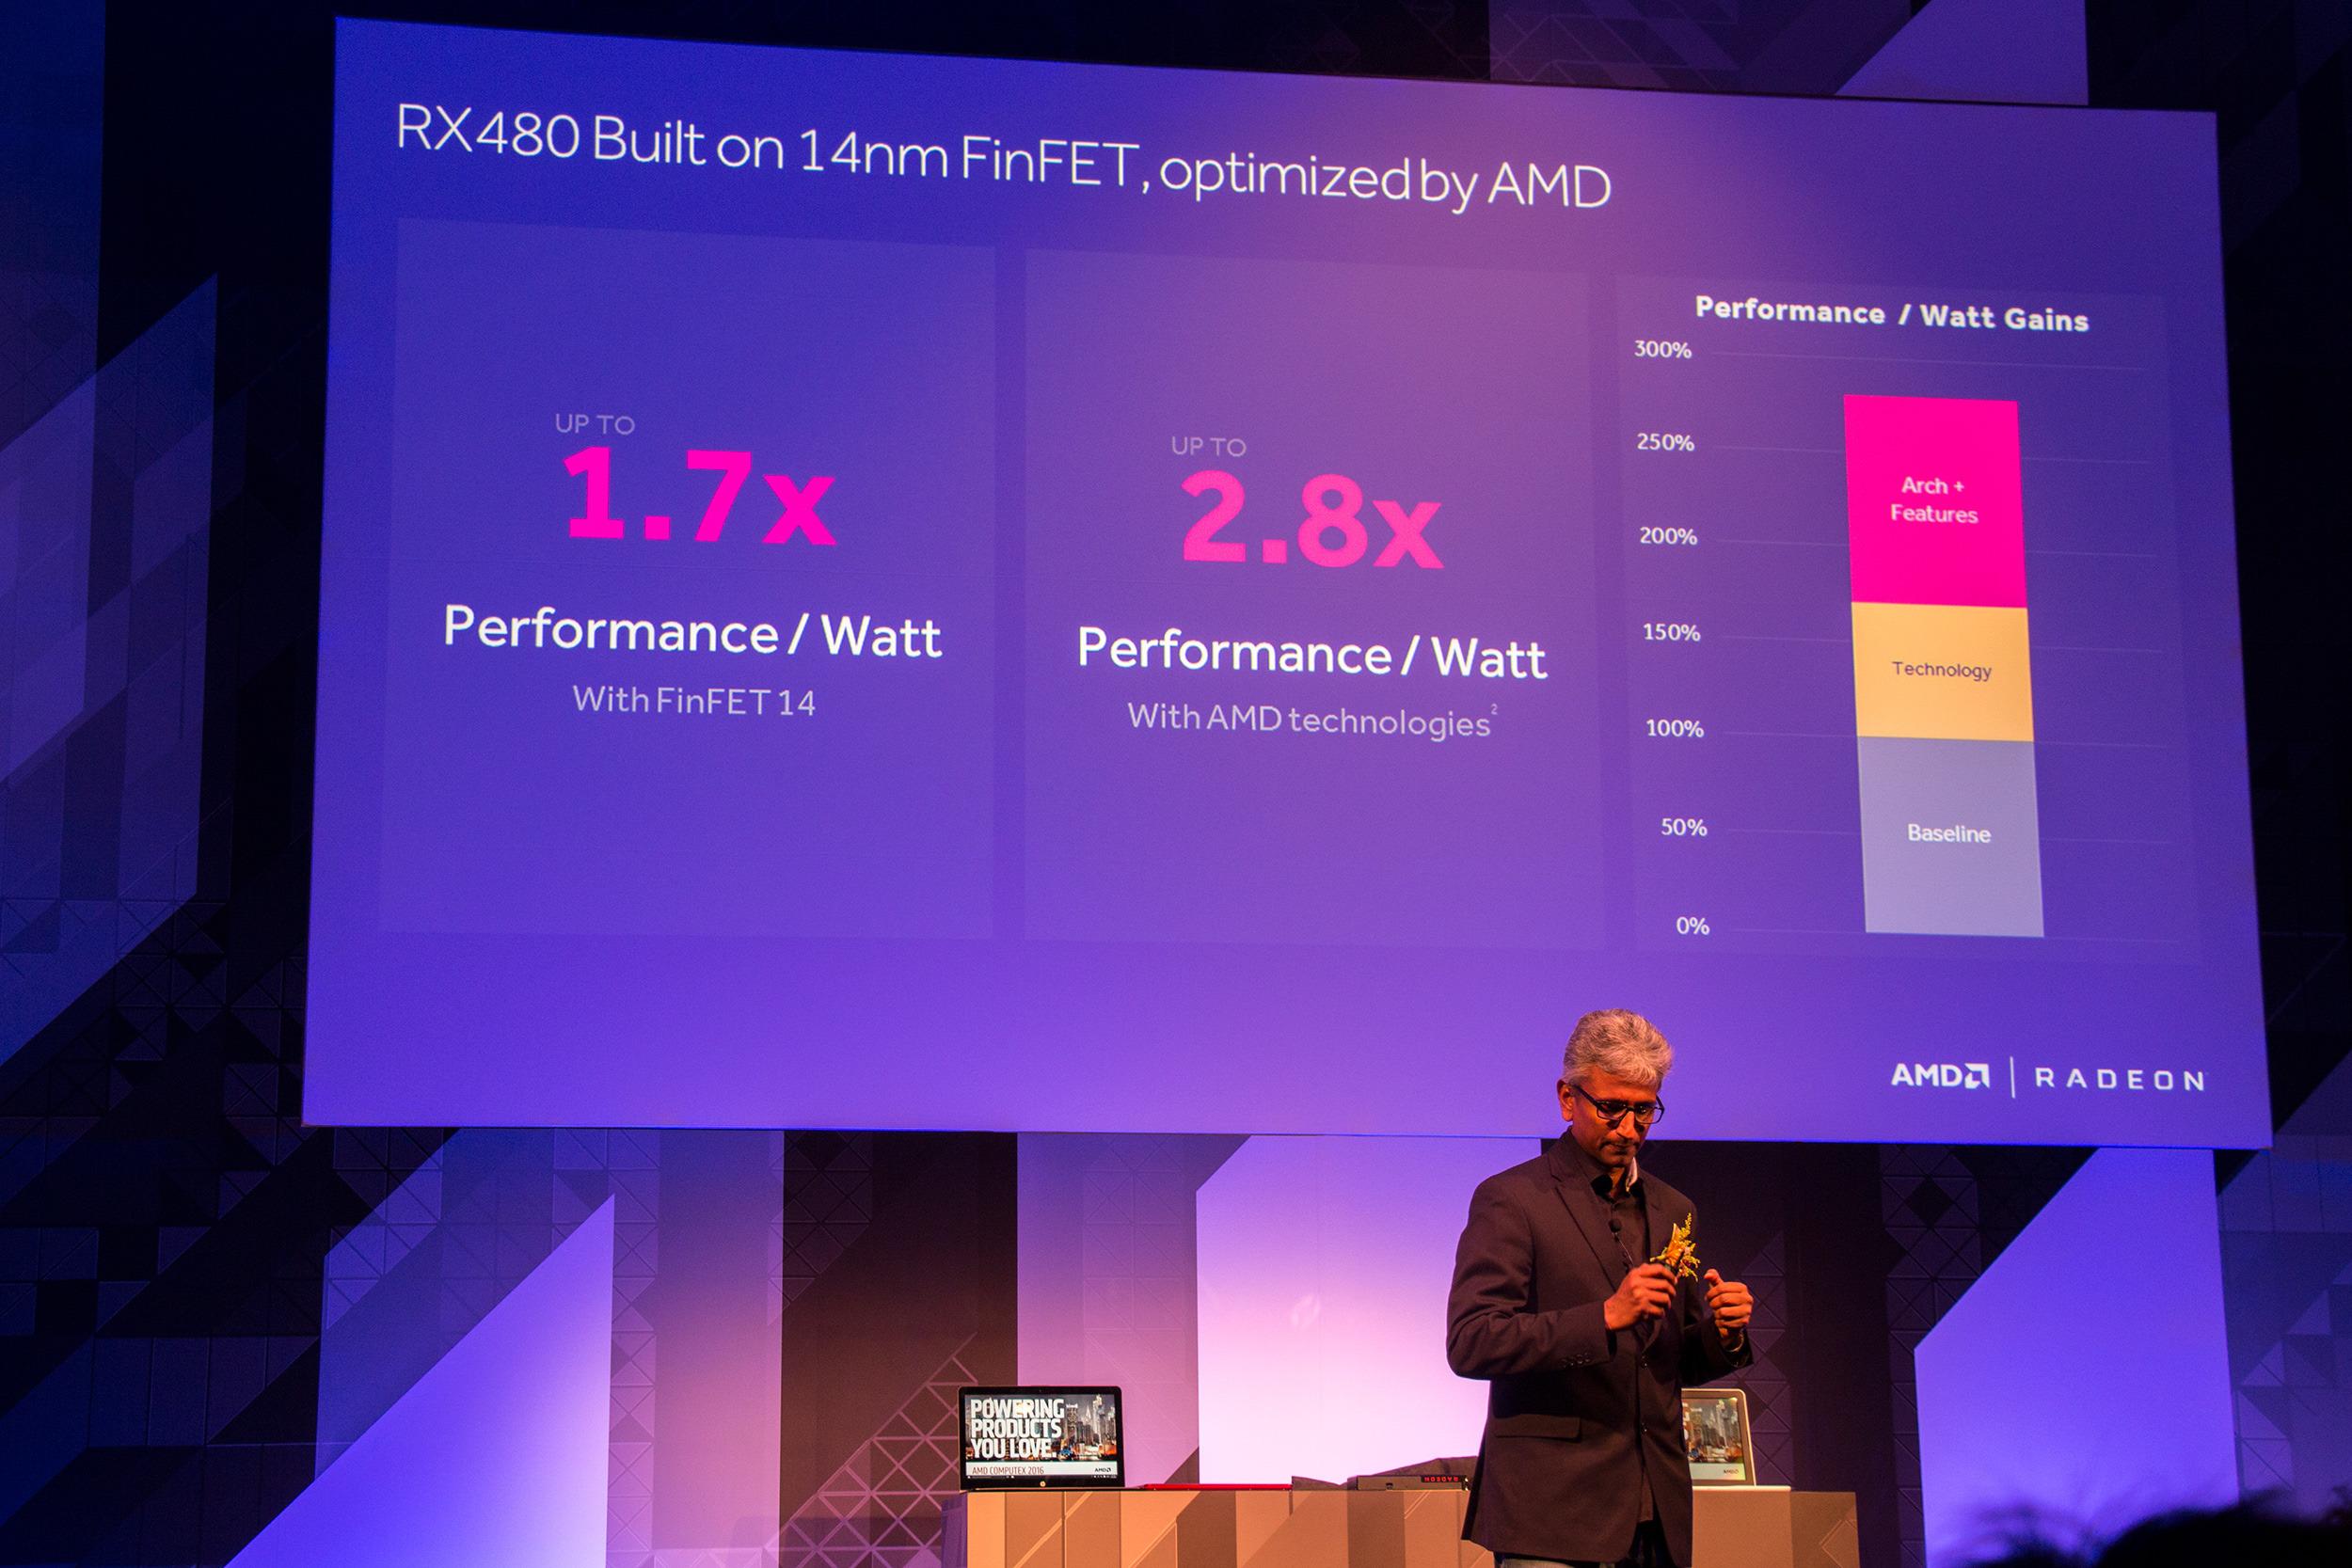 I tillegg til at overgangen til 14-nanometers FinFET-prosess har gjort det mulig å øke ytelsen, har AMD også gjort flere optimaliseringer for å hente ut enda flere krefter.